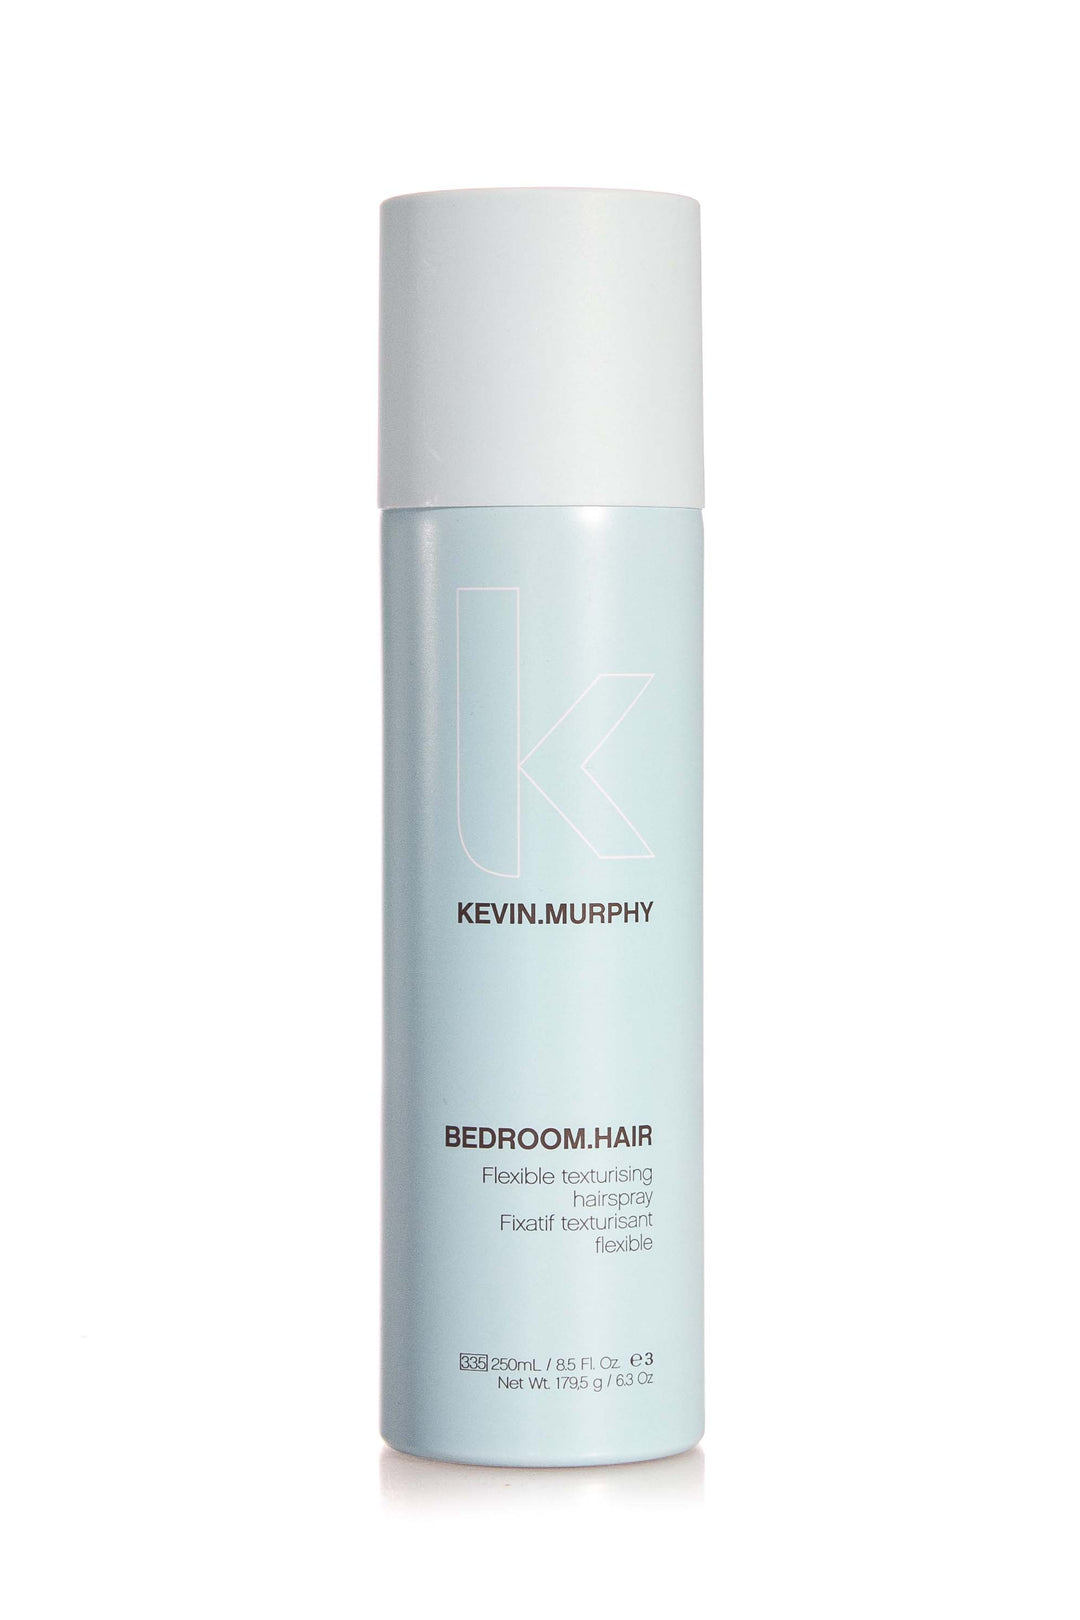 Kevin Murphy Bedroom Hair Flexible Texturising Hairspray